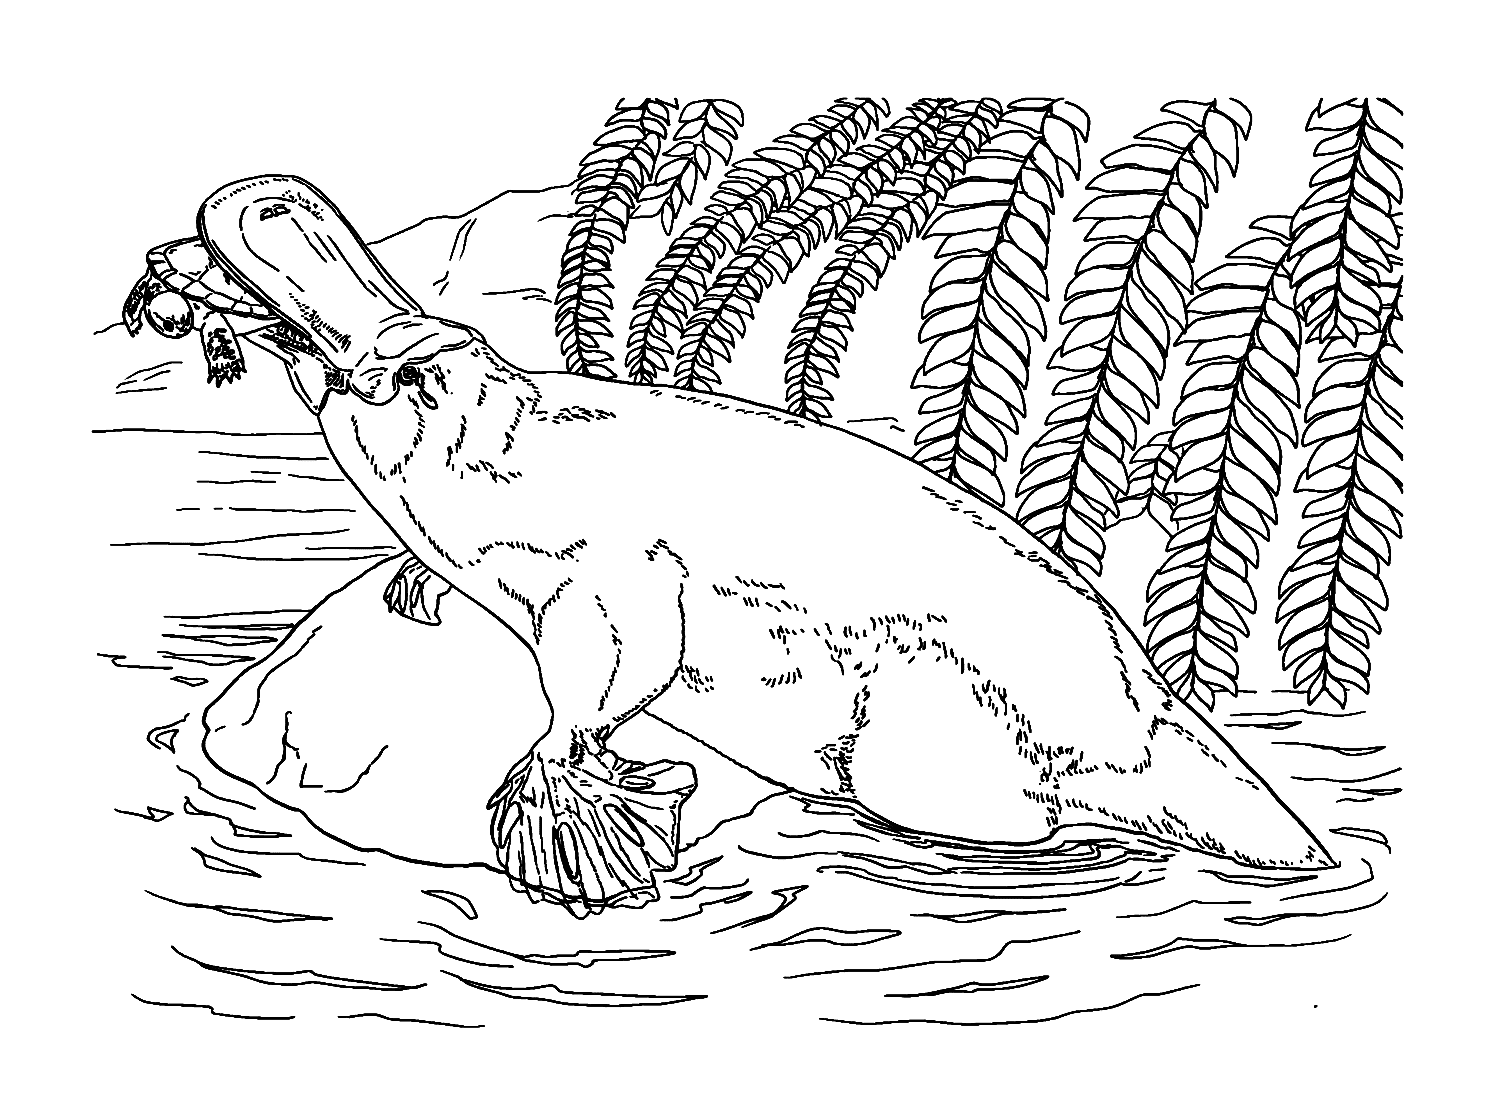 Ornitorinco che striscia su una roccia from Platypus